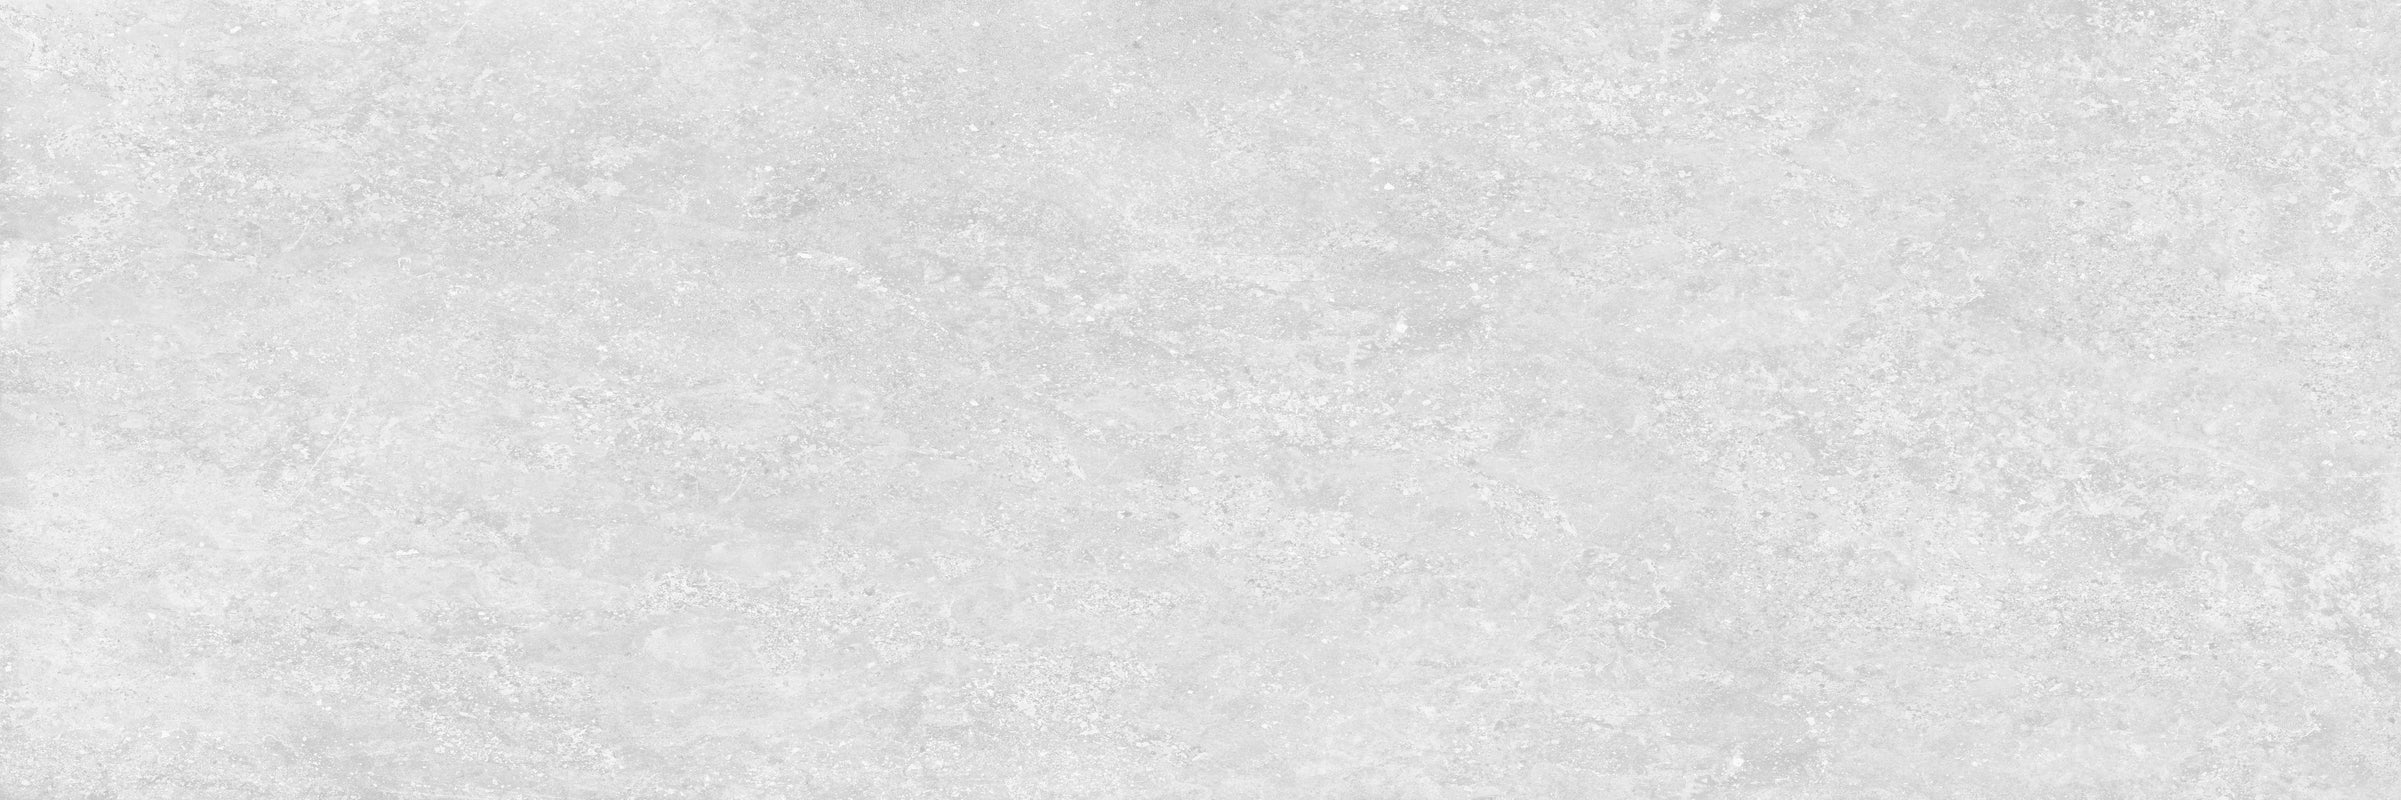 Küchenrückwand-Weißer Hintergrund Marmor Wand Textur für Design Kunstwerk